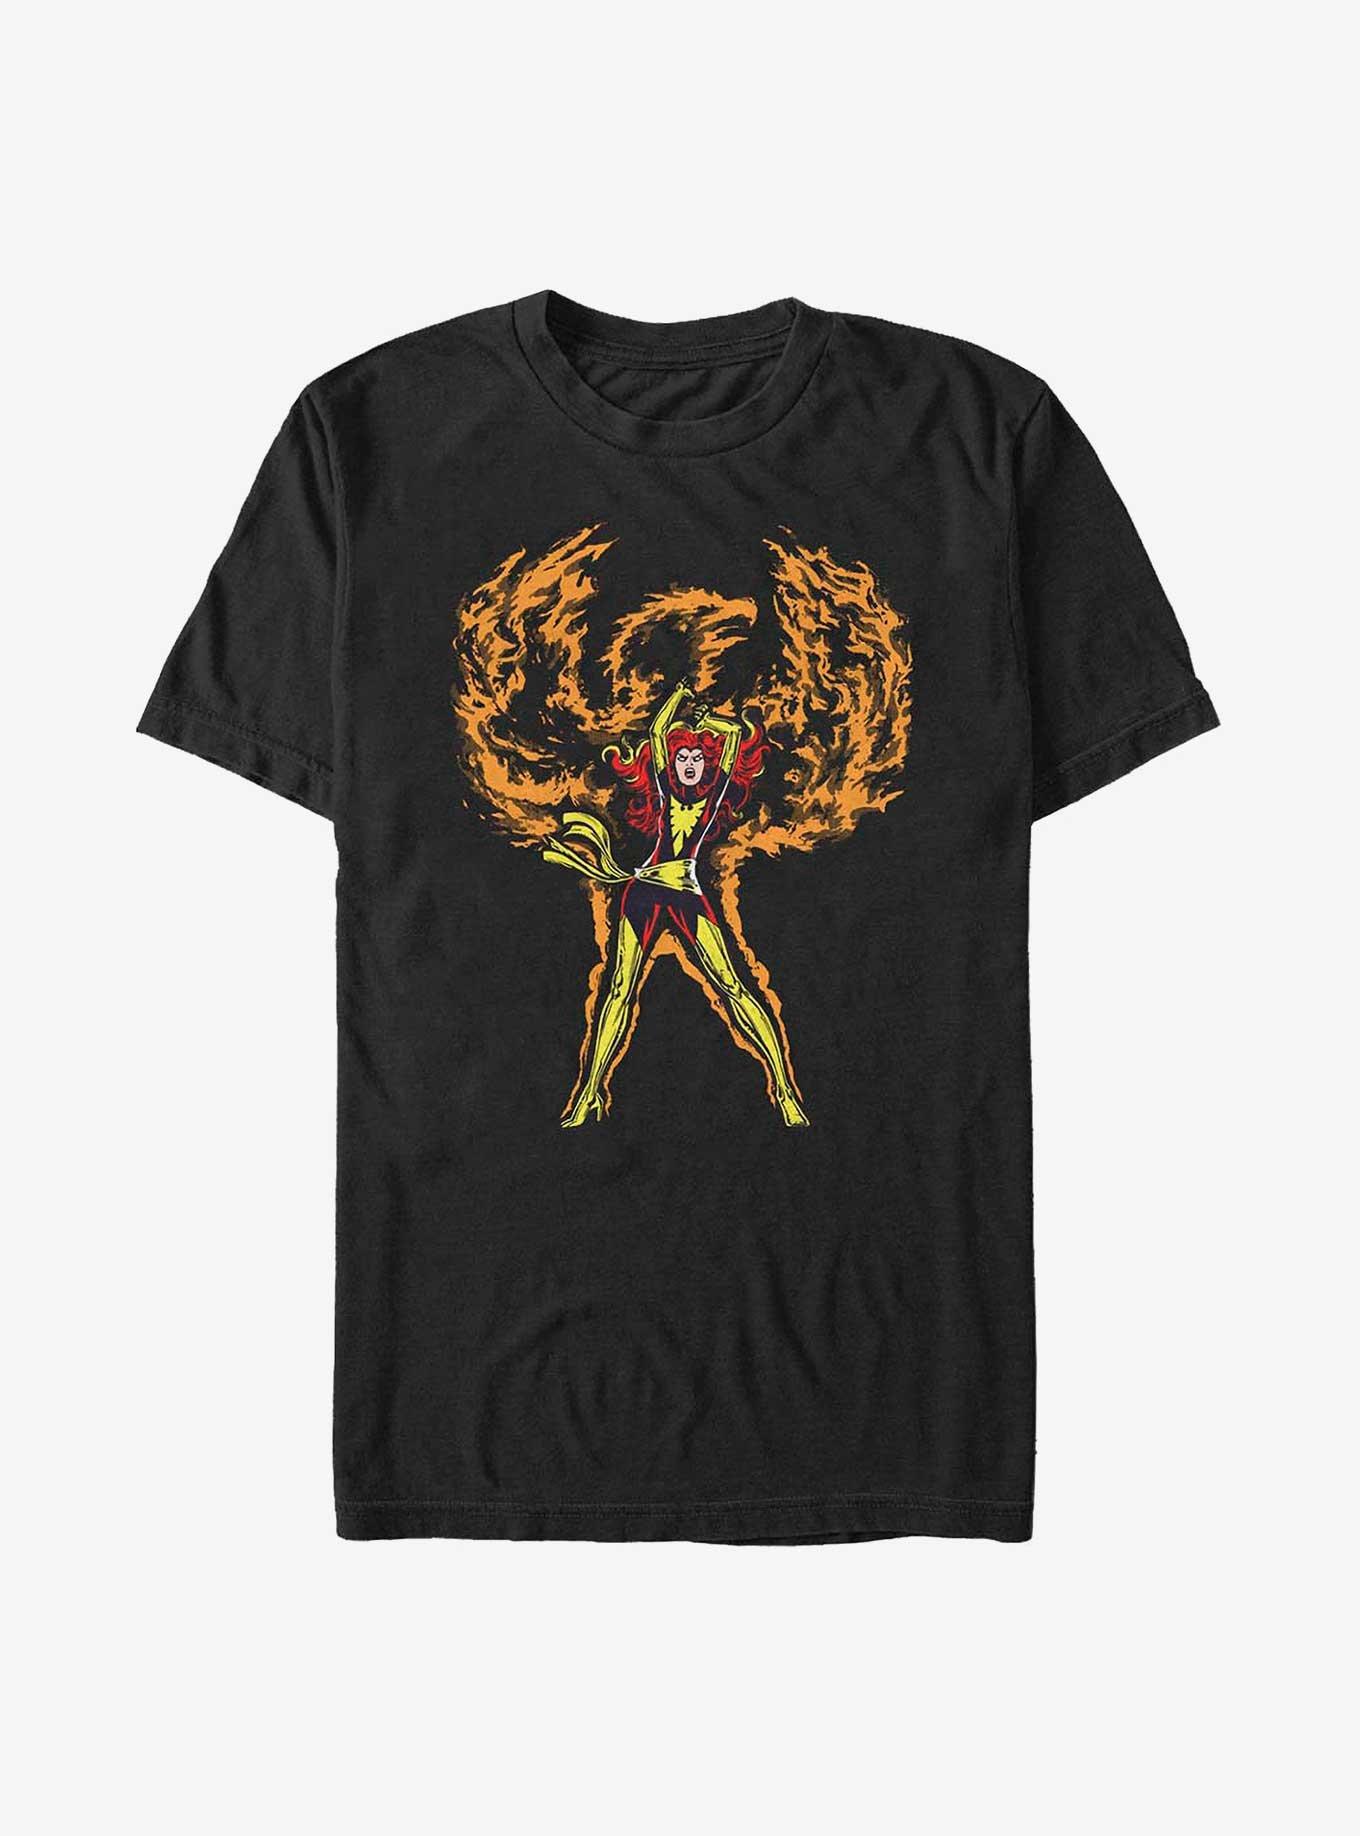 X-Men Phoenix Rises Big & Tall T-Shirt, BLACK, hi-res